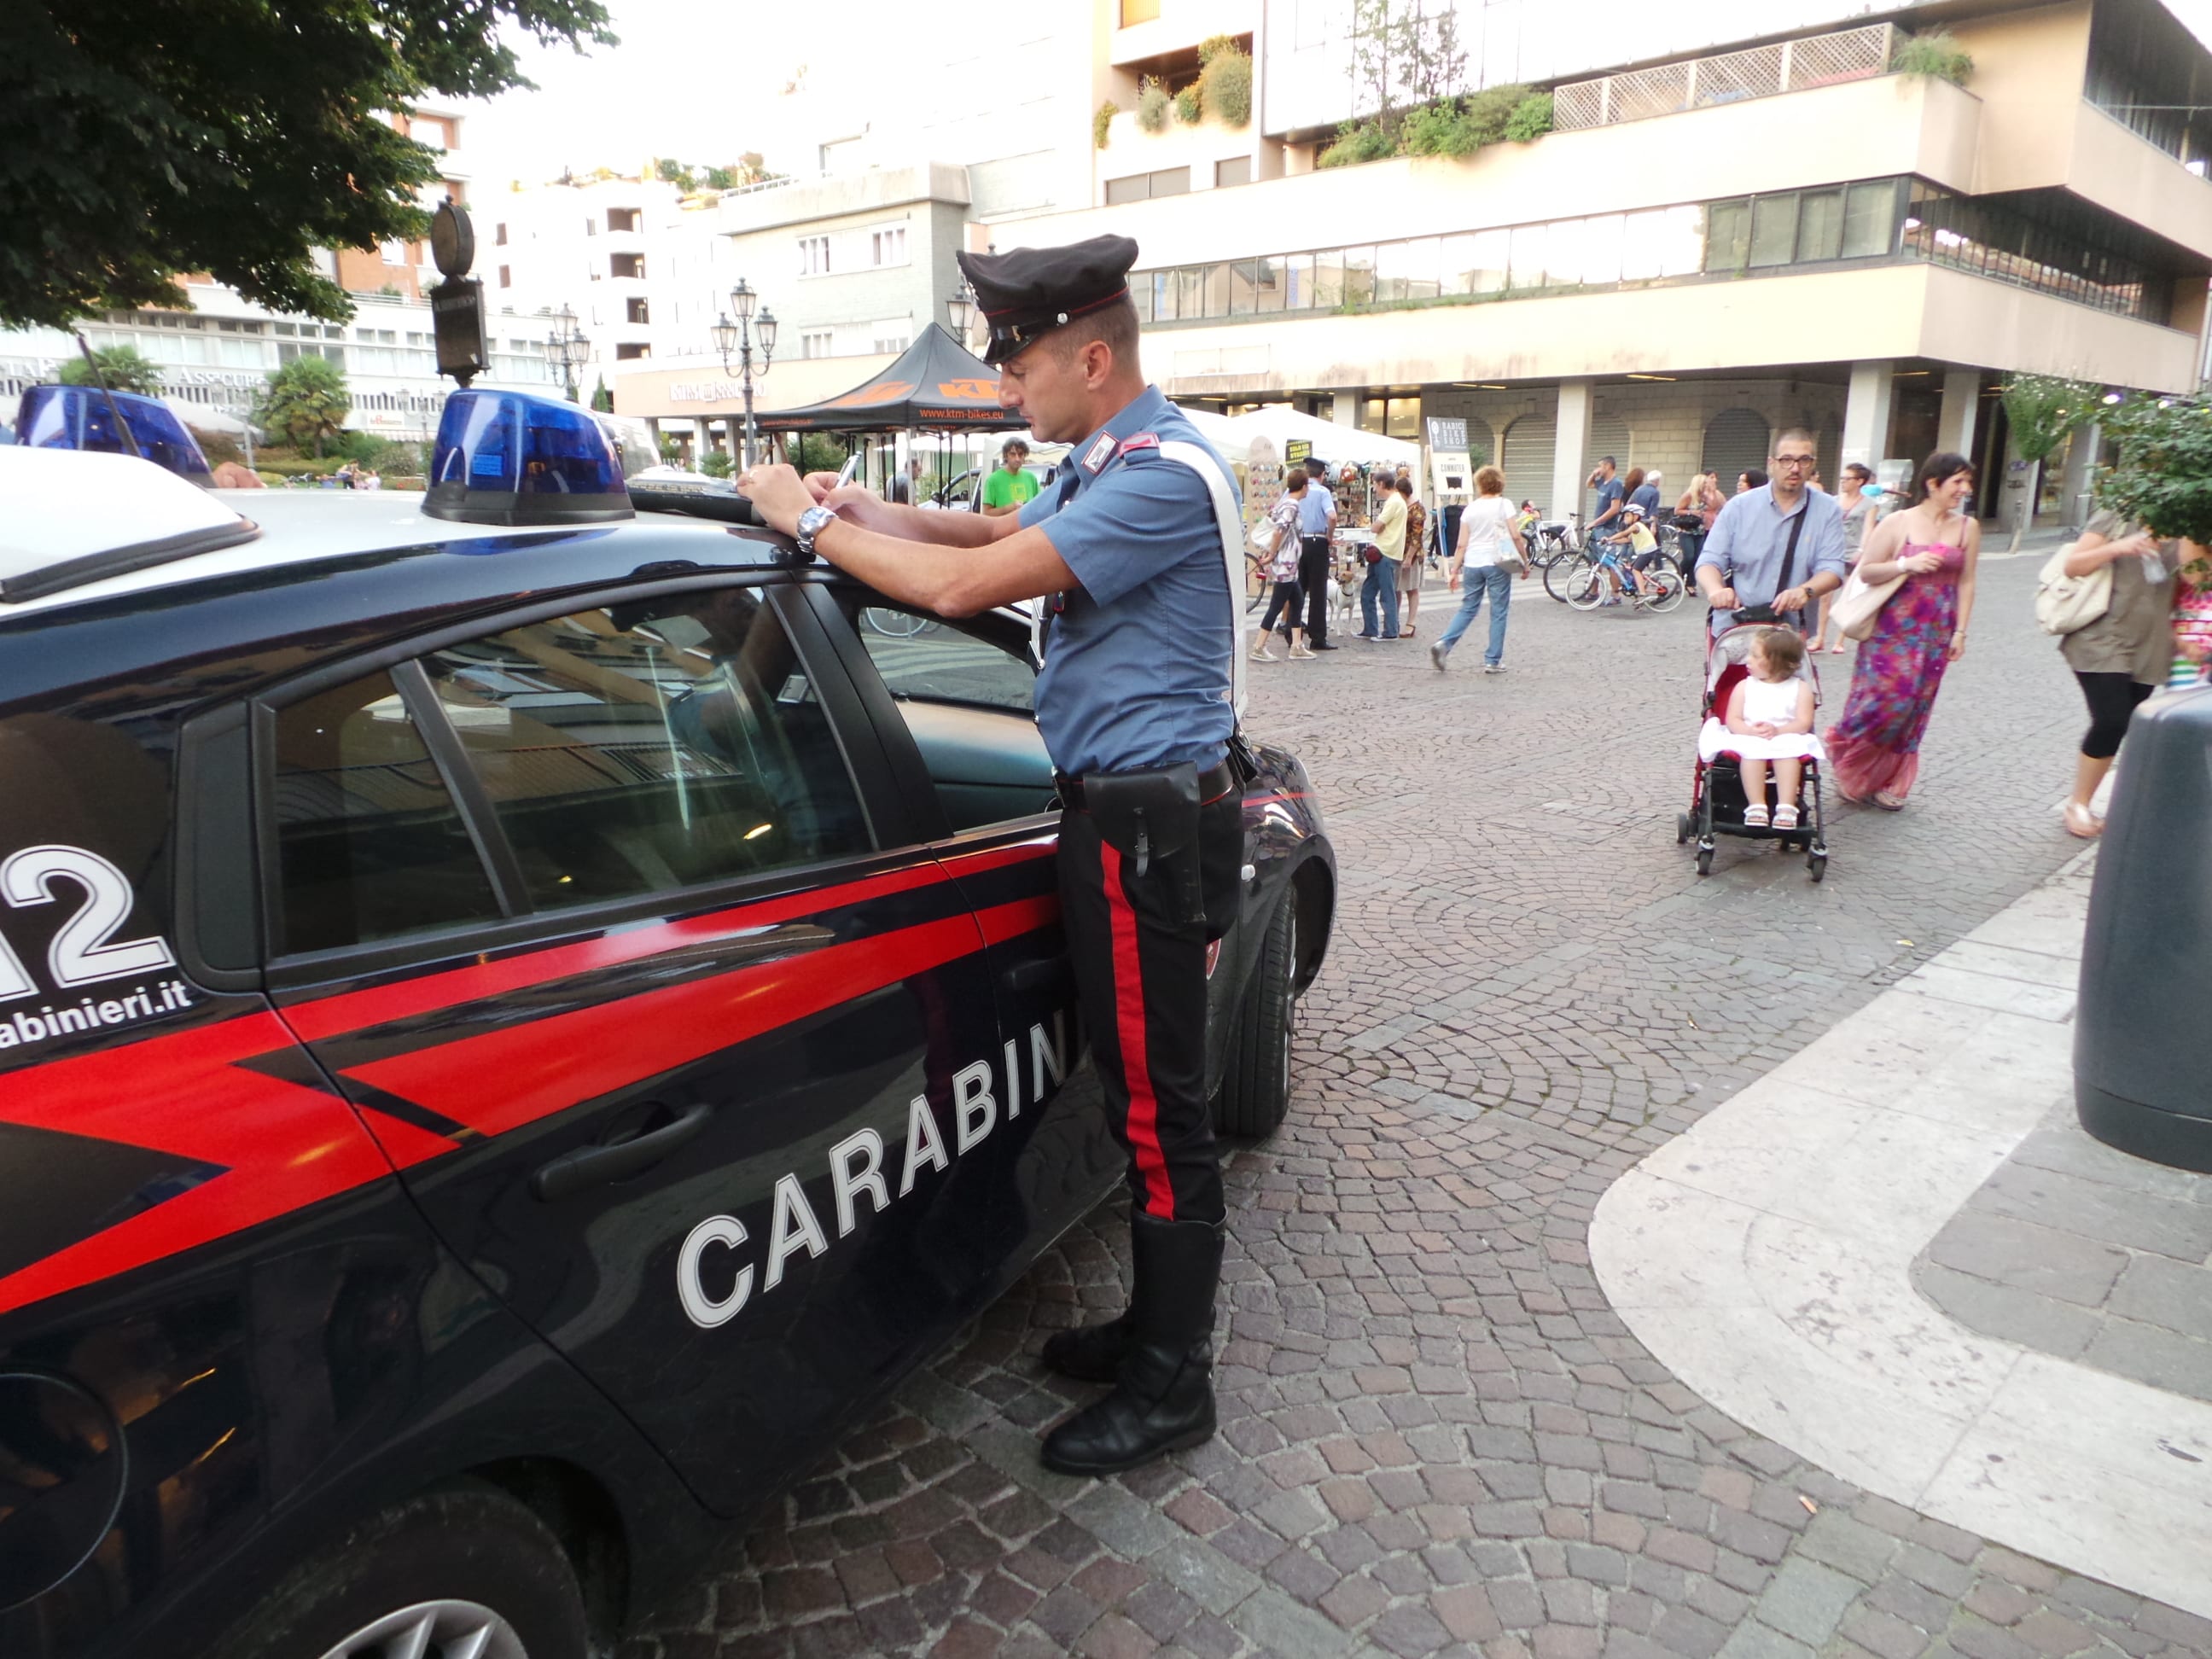 Apprezzamenti sgraditi alla passante, arrivano i carabinieri